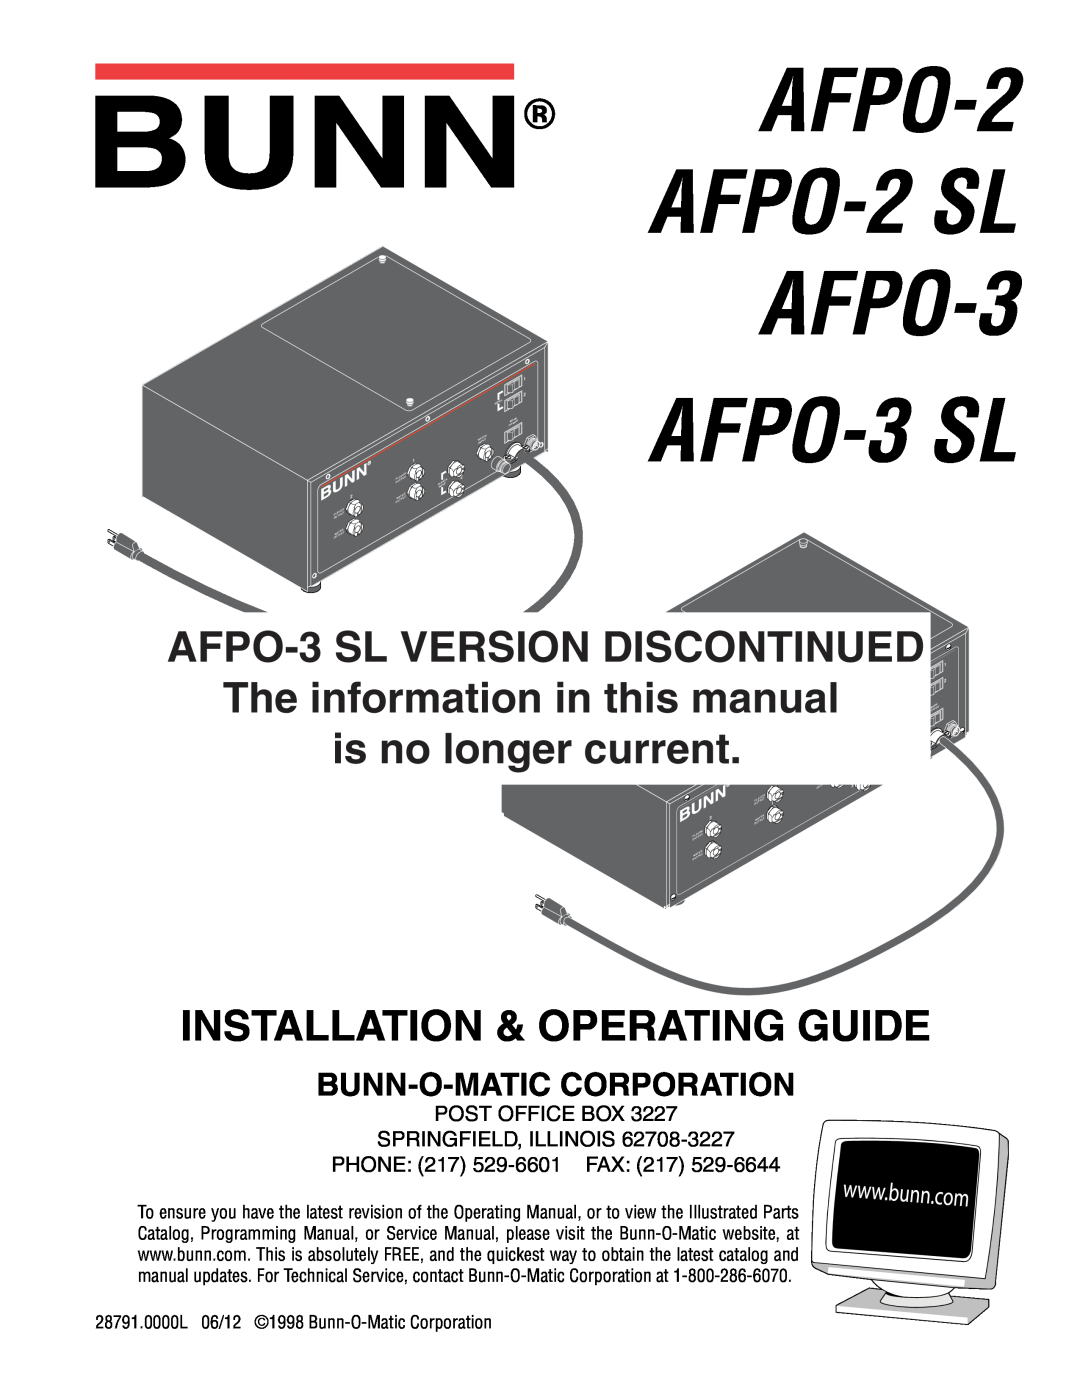 Bunn AFPO-3 SL manual Bunn-O-Matic Corporation, AFPO-2 AFPO-2 SL AFPO-3, Service & Repair Manual 